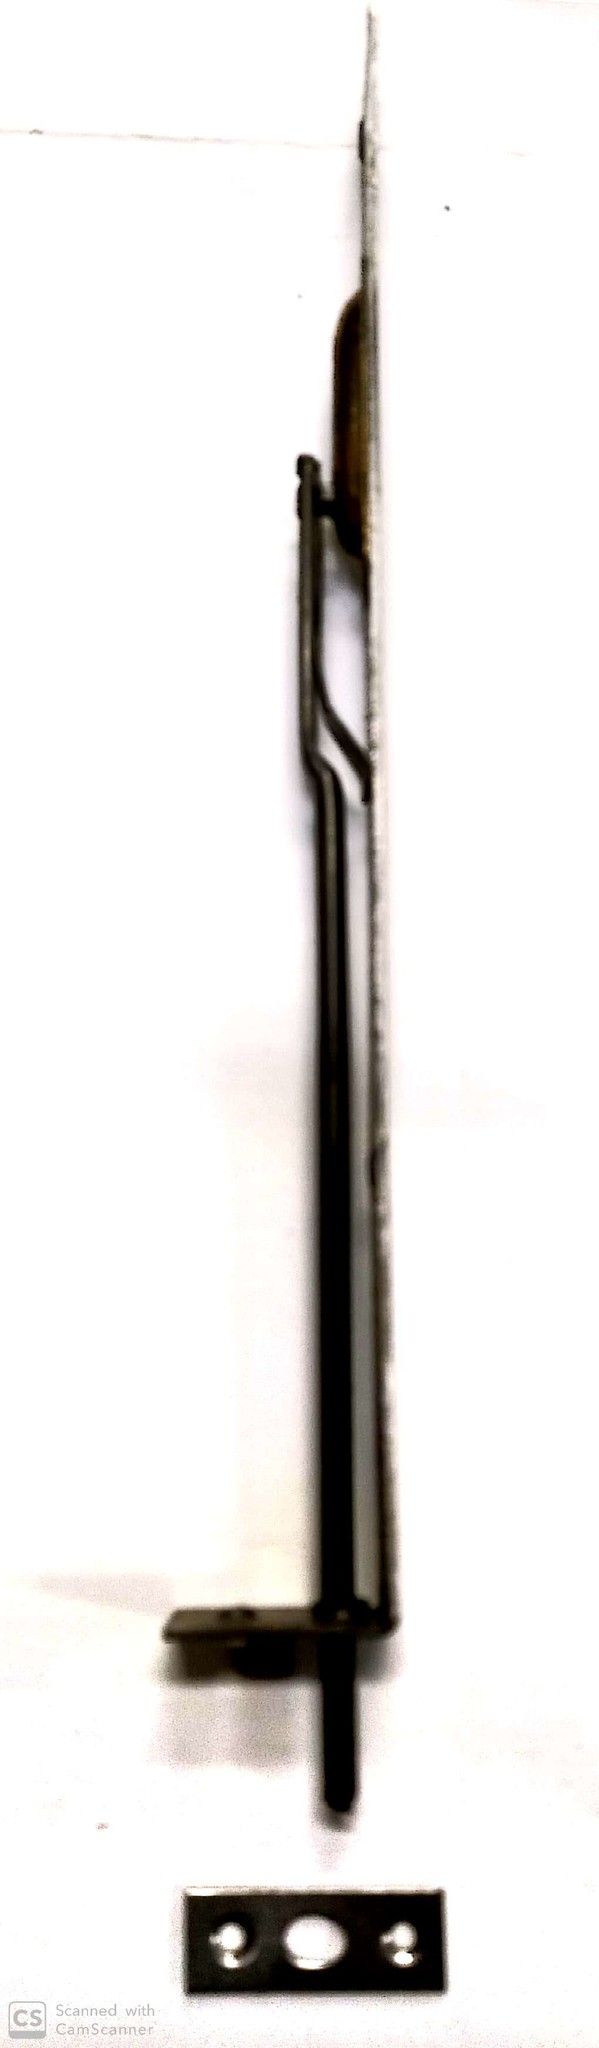 Catenaccio ad unghia cm 25 frontale mm 18 in ferro grezzo serie media